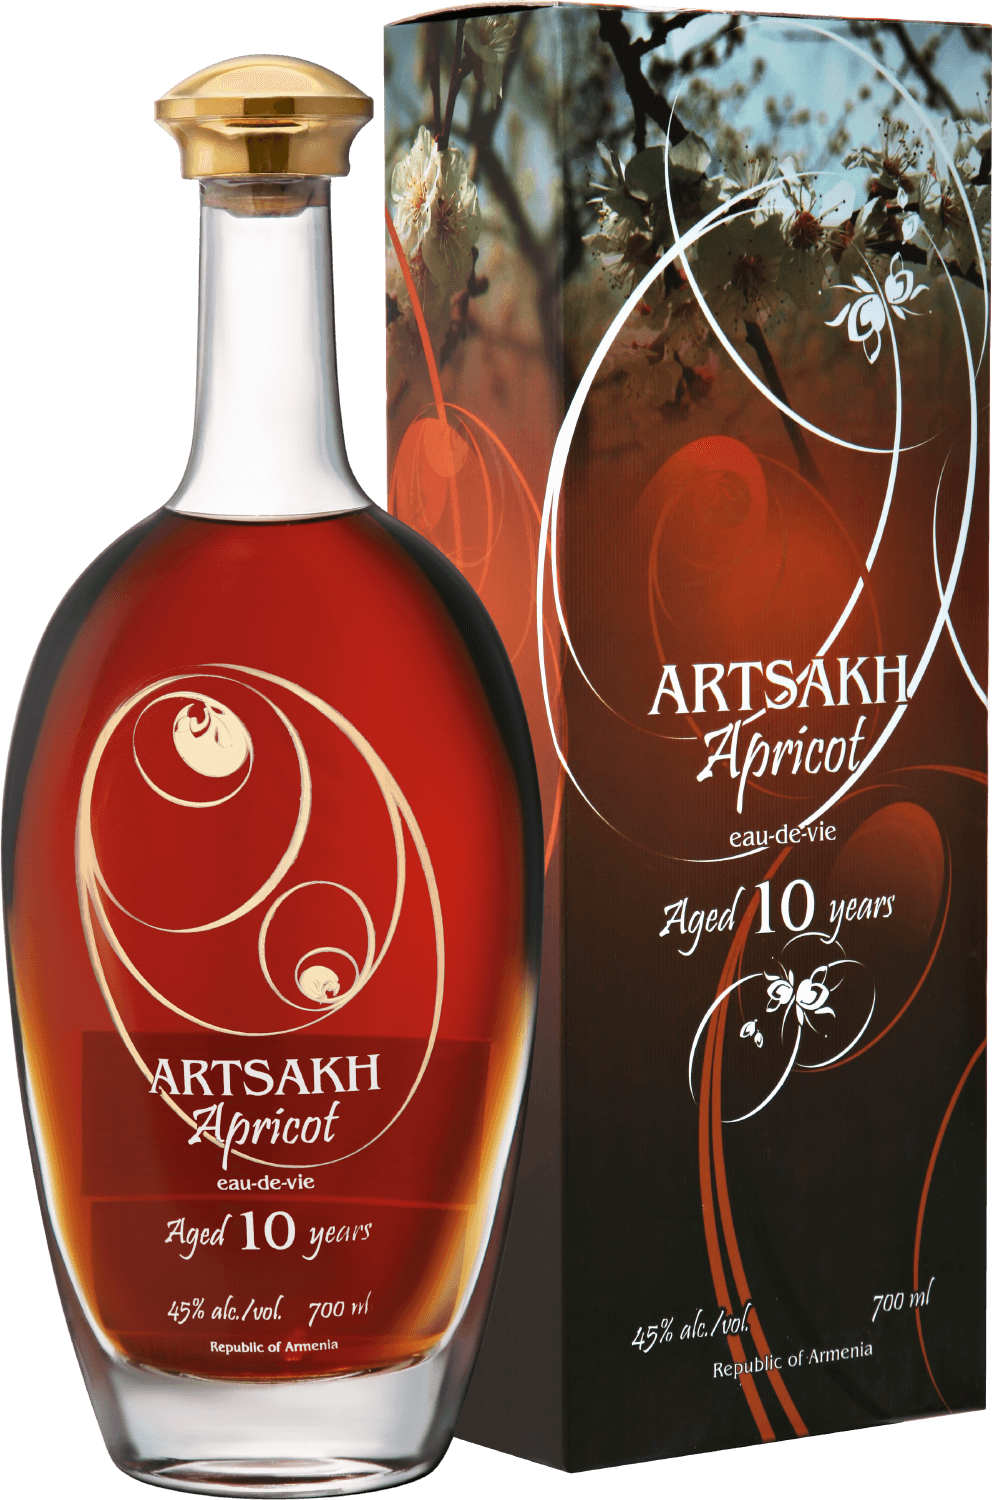 Artsakh Apricot 10 yo (gift box) ararat apricot gift box